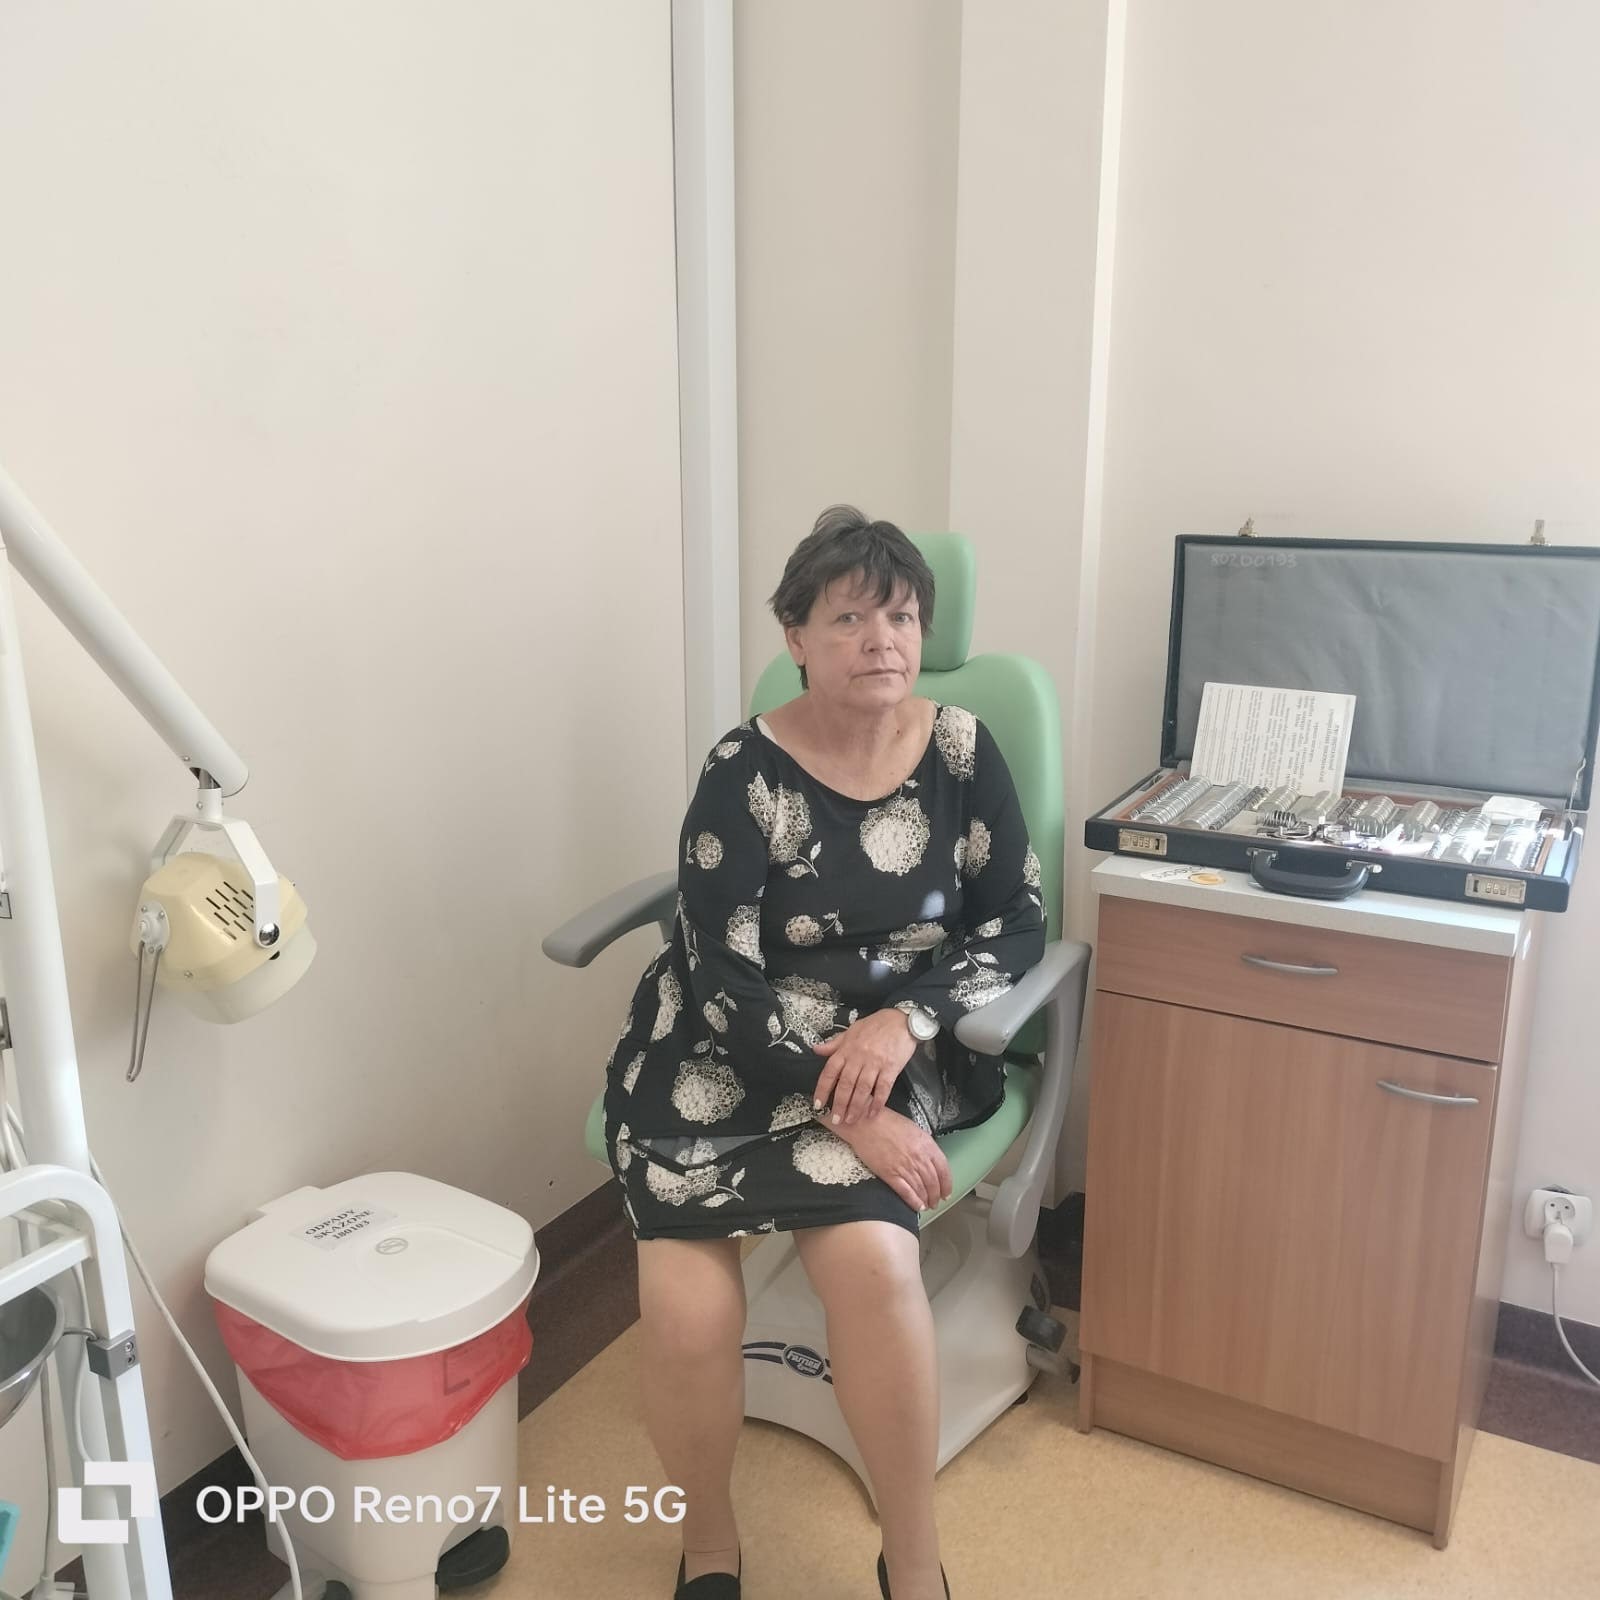 Kobieta siedząca na fotelu do badań lekarskich, w tle przyrządy okulistyczne. 